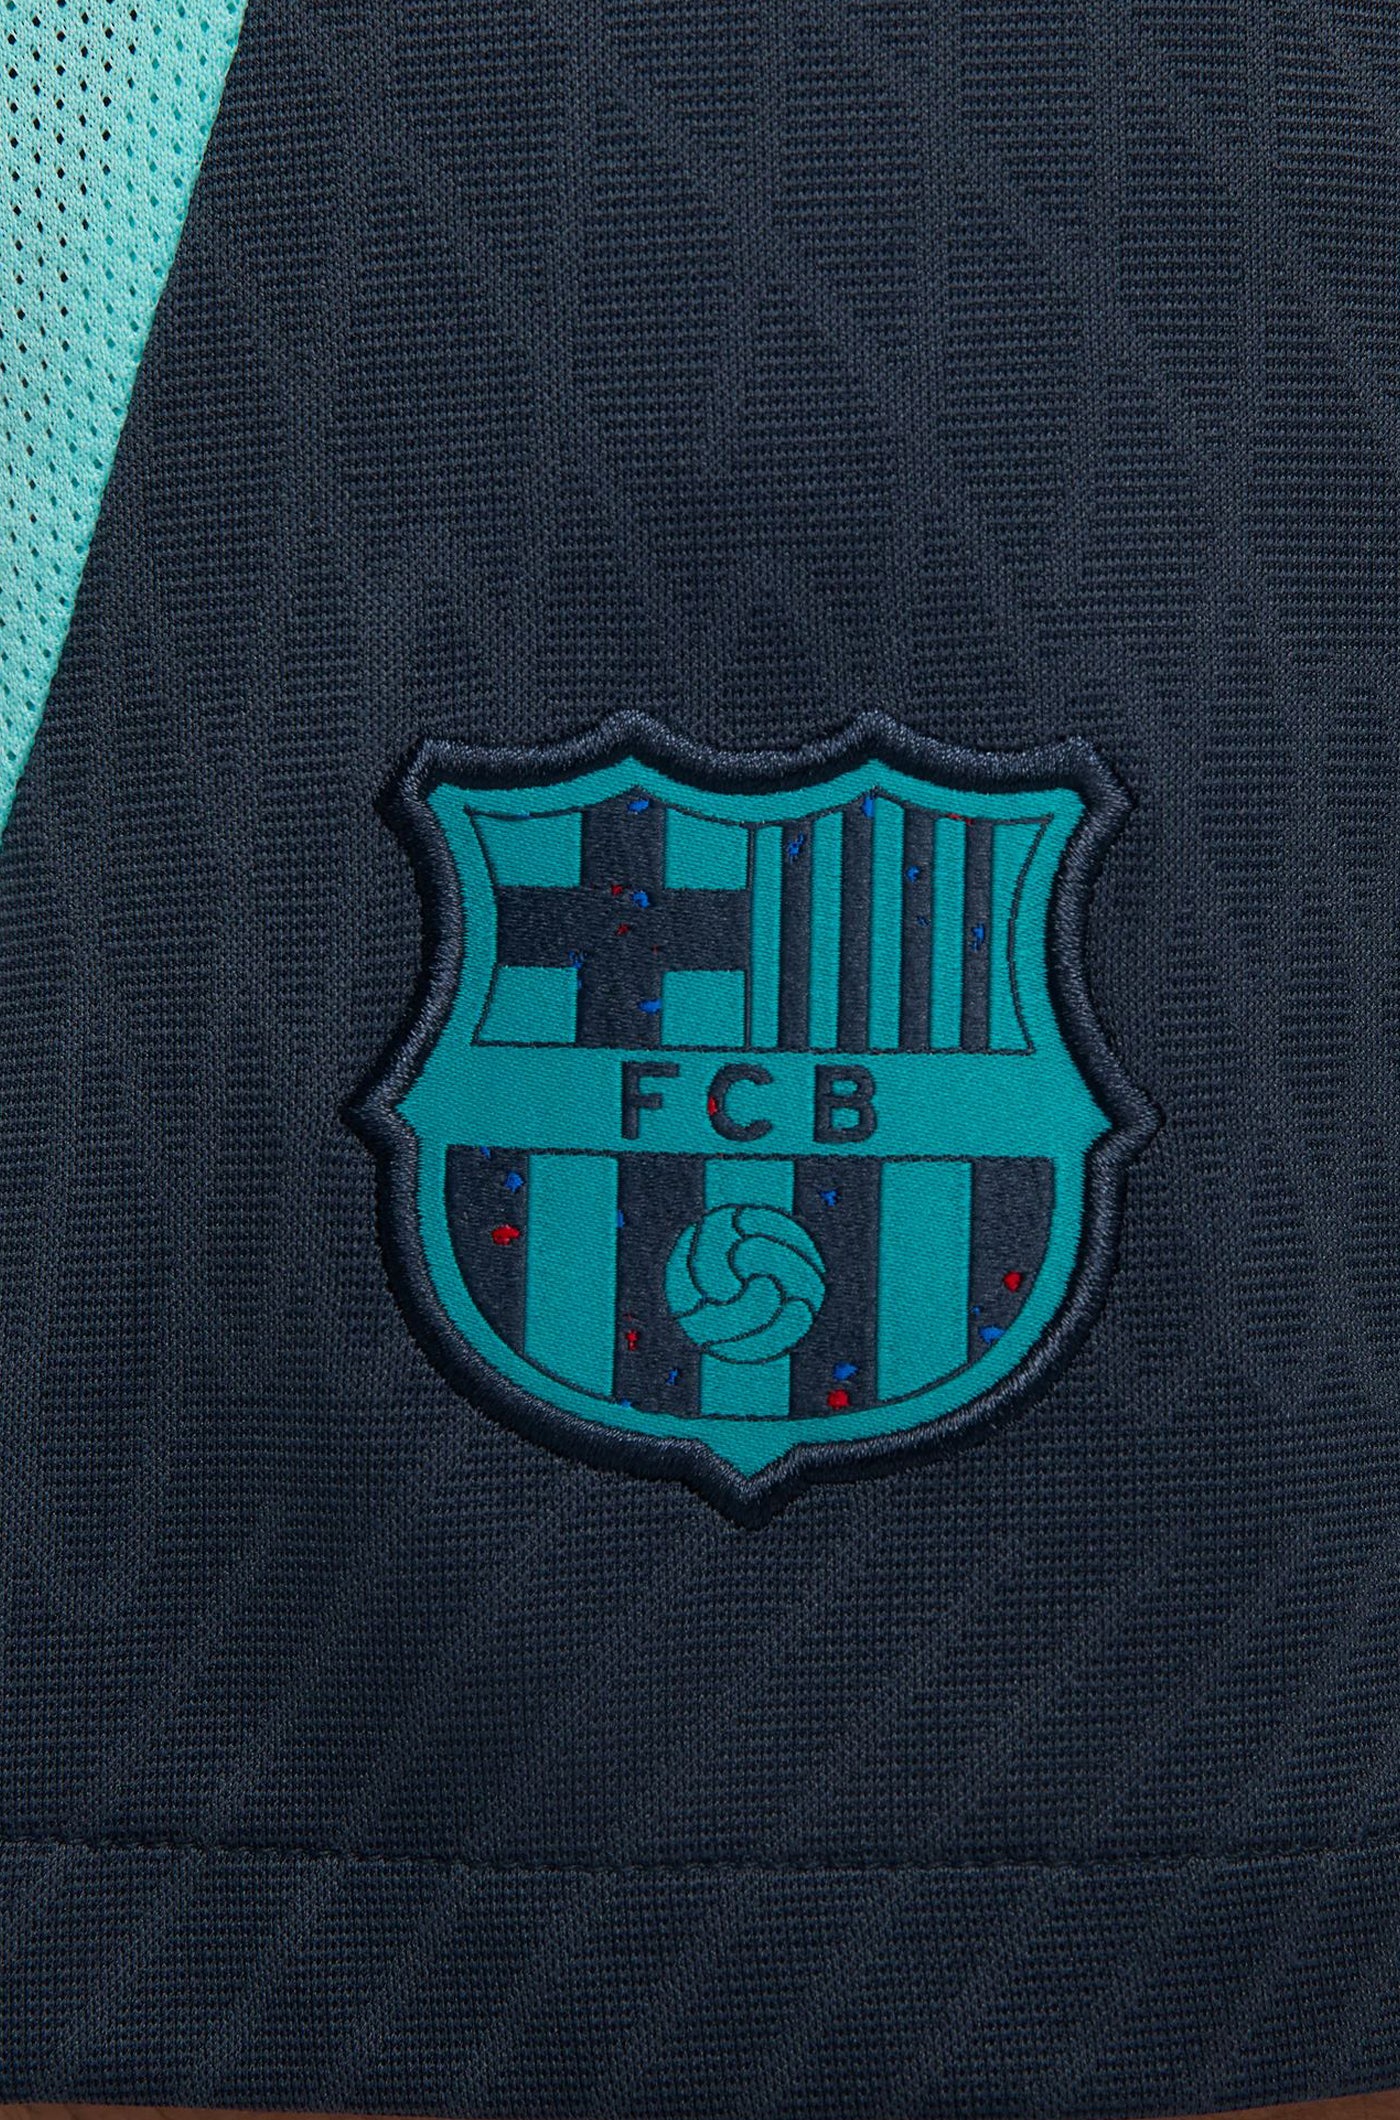 Kurze Trainingshose FC Barcelona 23/24